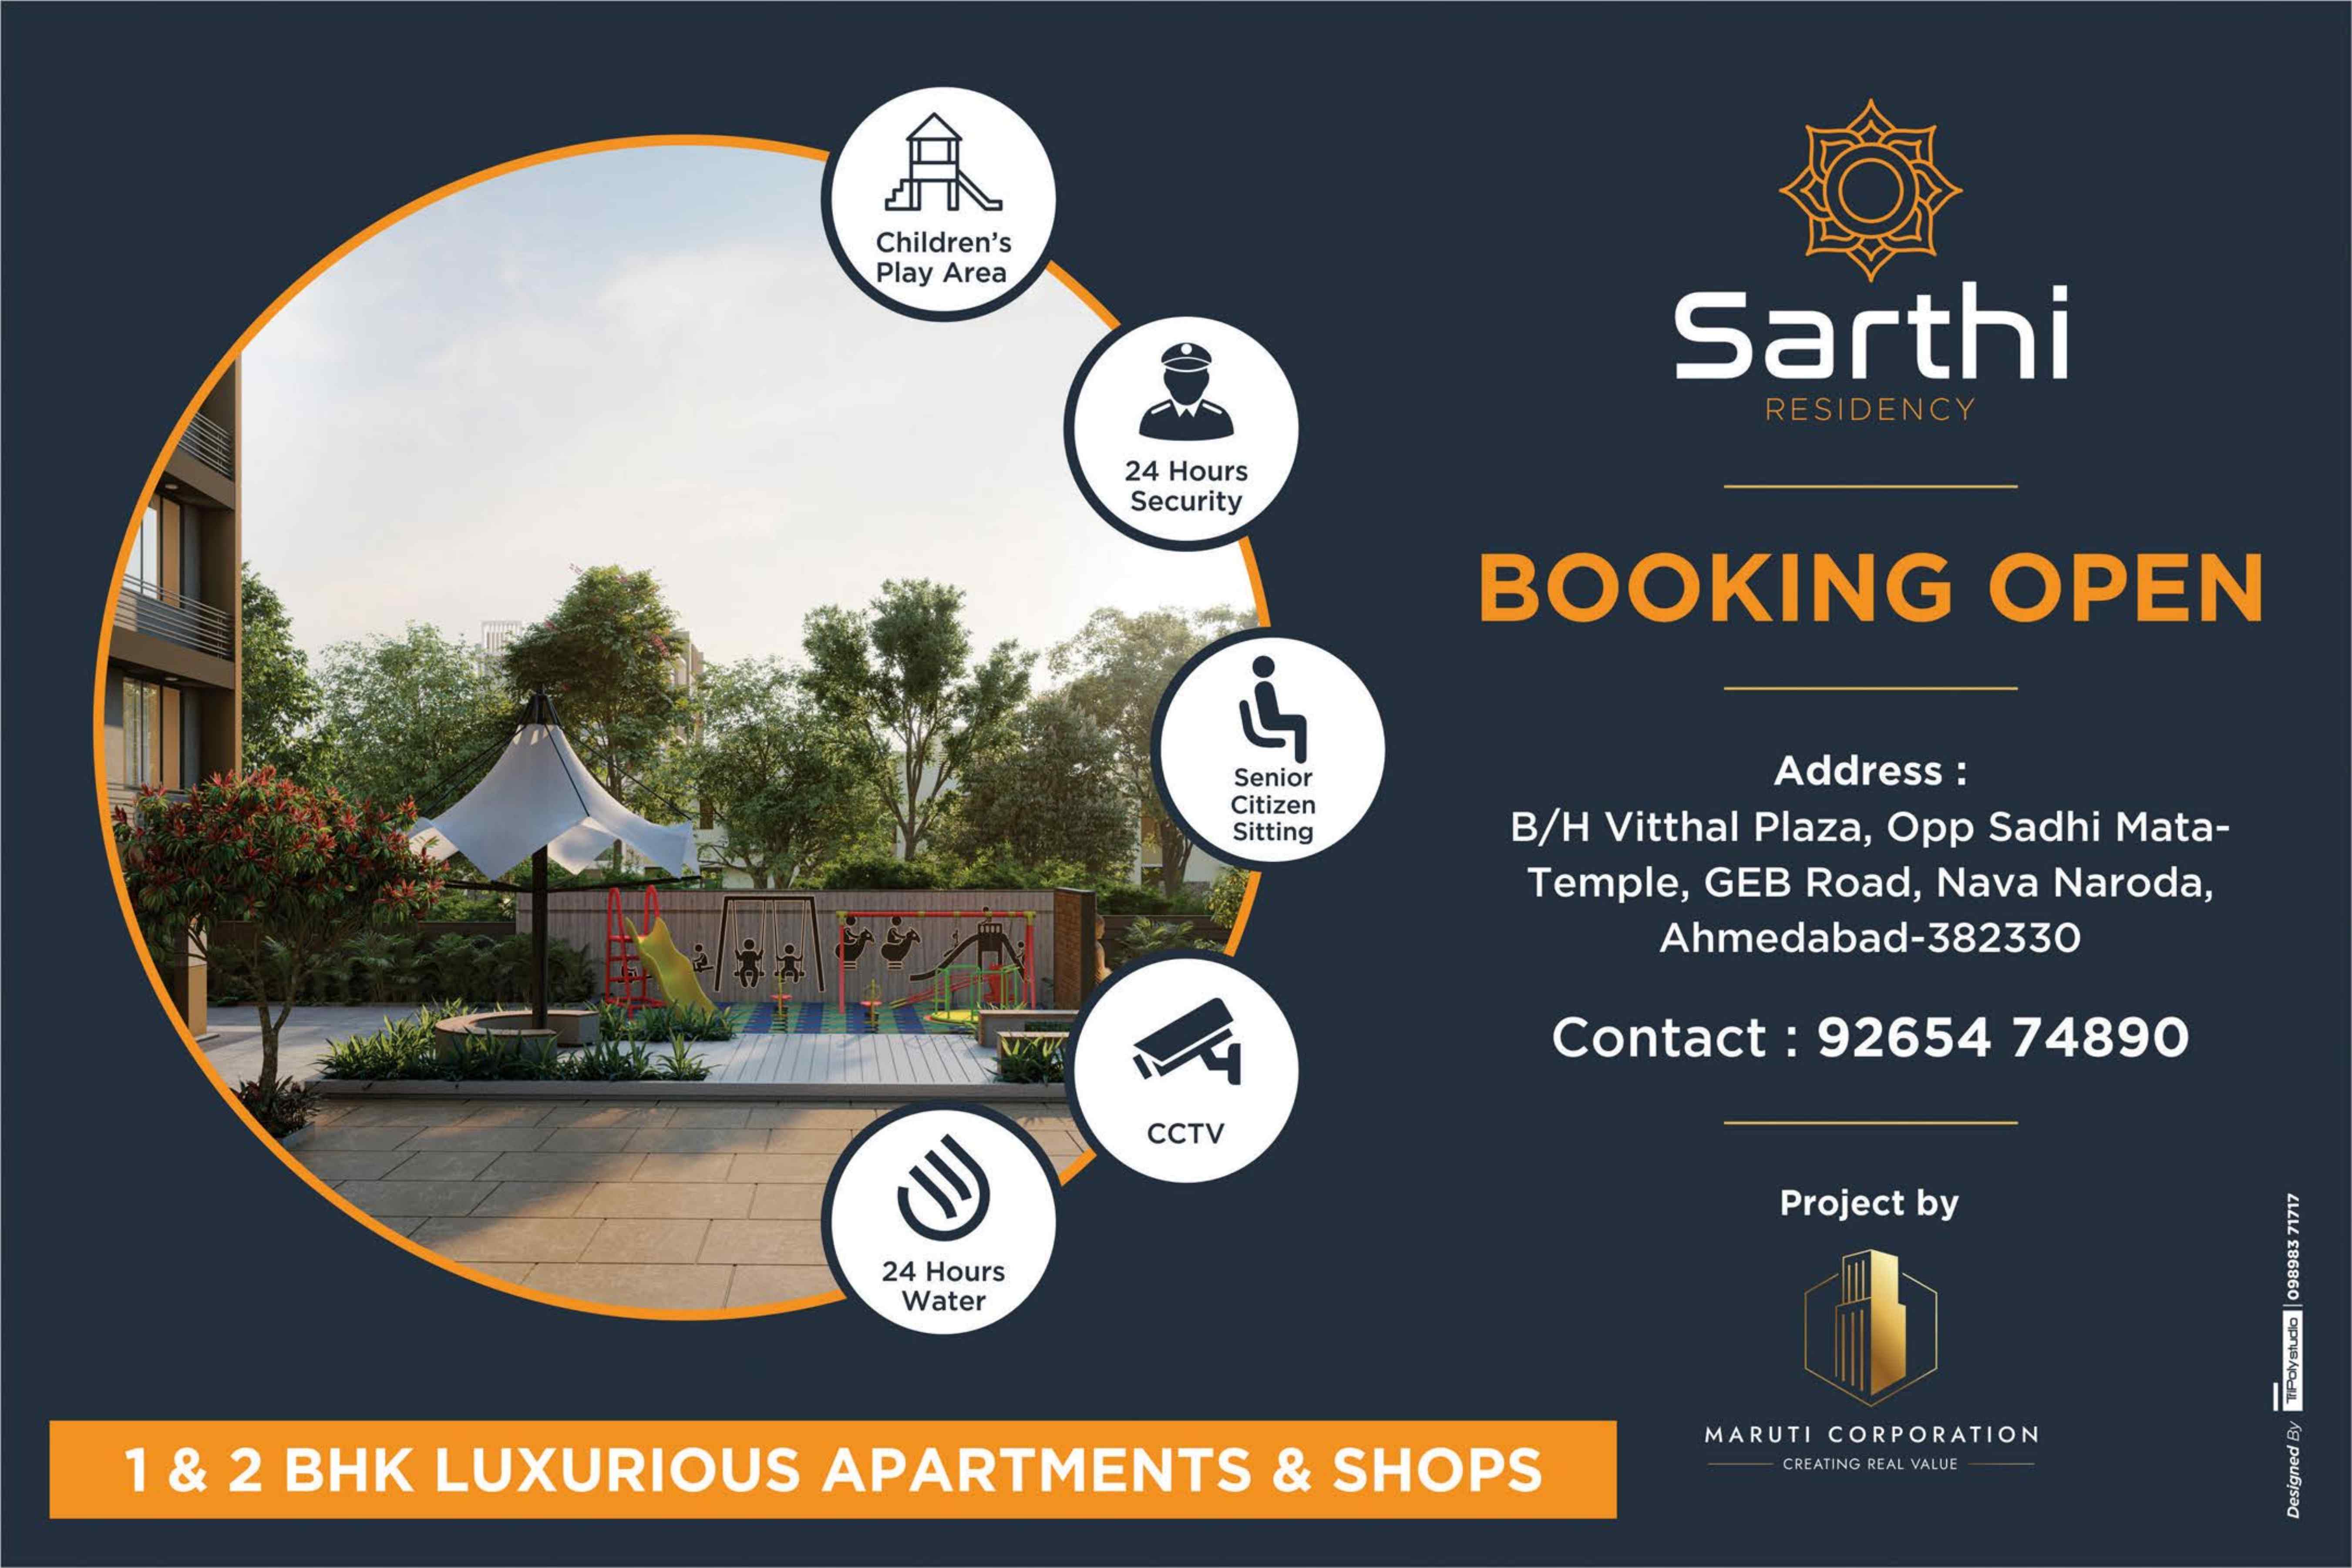 Sarthi Residency